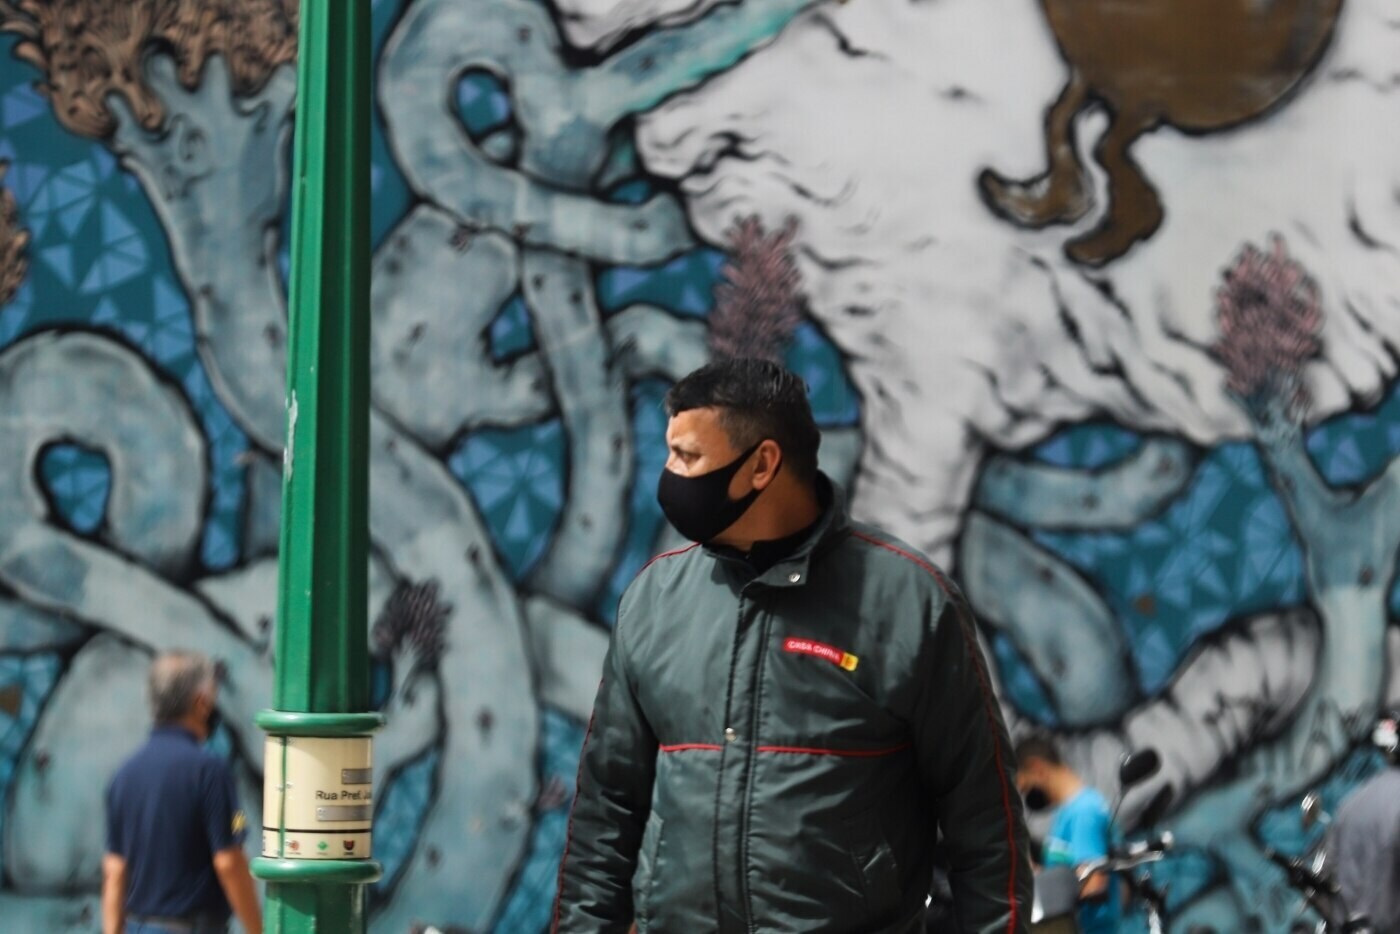 Movimentacao no centro de Curitiba de pessoas com mascara contra a Covid 19. Foto: Geraldo Bubniak/AGB